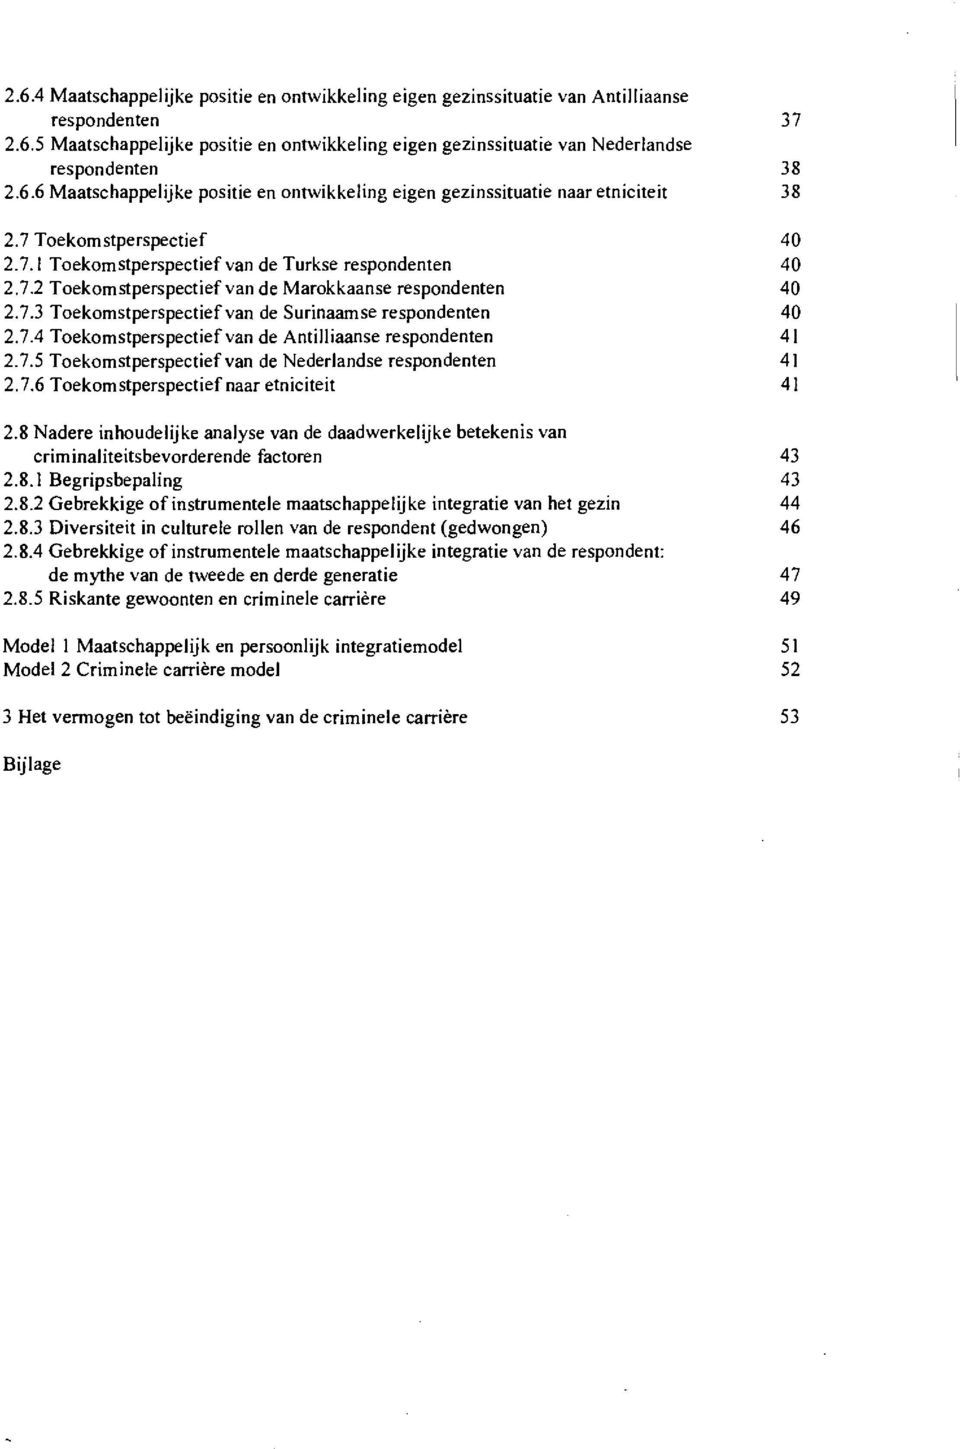 7.3 Toekomstperspectief van de Surinaamse respondenten 40 2.7.4 Toekomstperspectief van de Antilliaanse respondenten 41 2.7.5 Toekomstperspectief van de Nederlandse respondenten 41 2.7.6 Toekomstperspectief naar etniciteit 41 2.